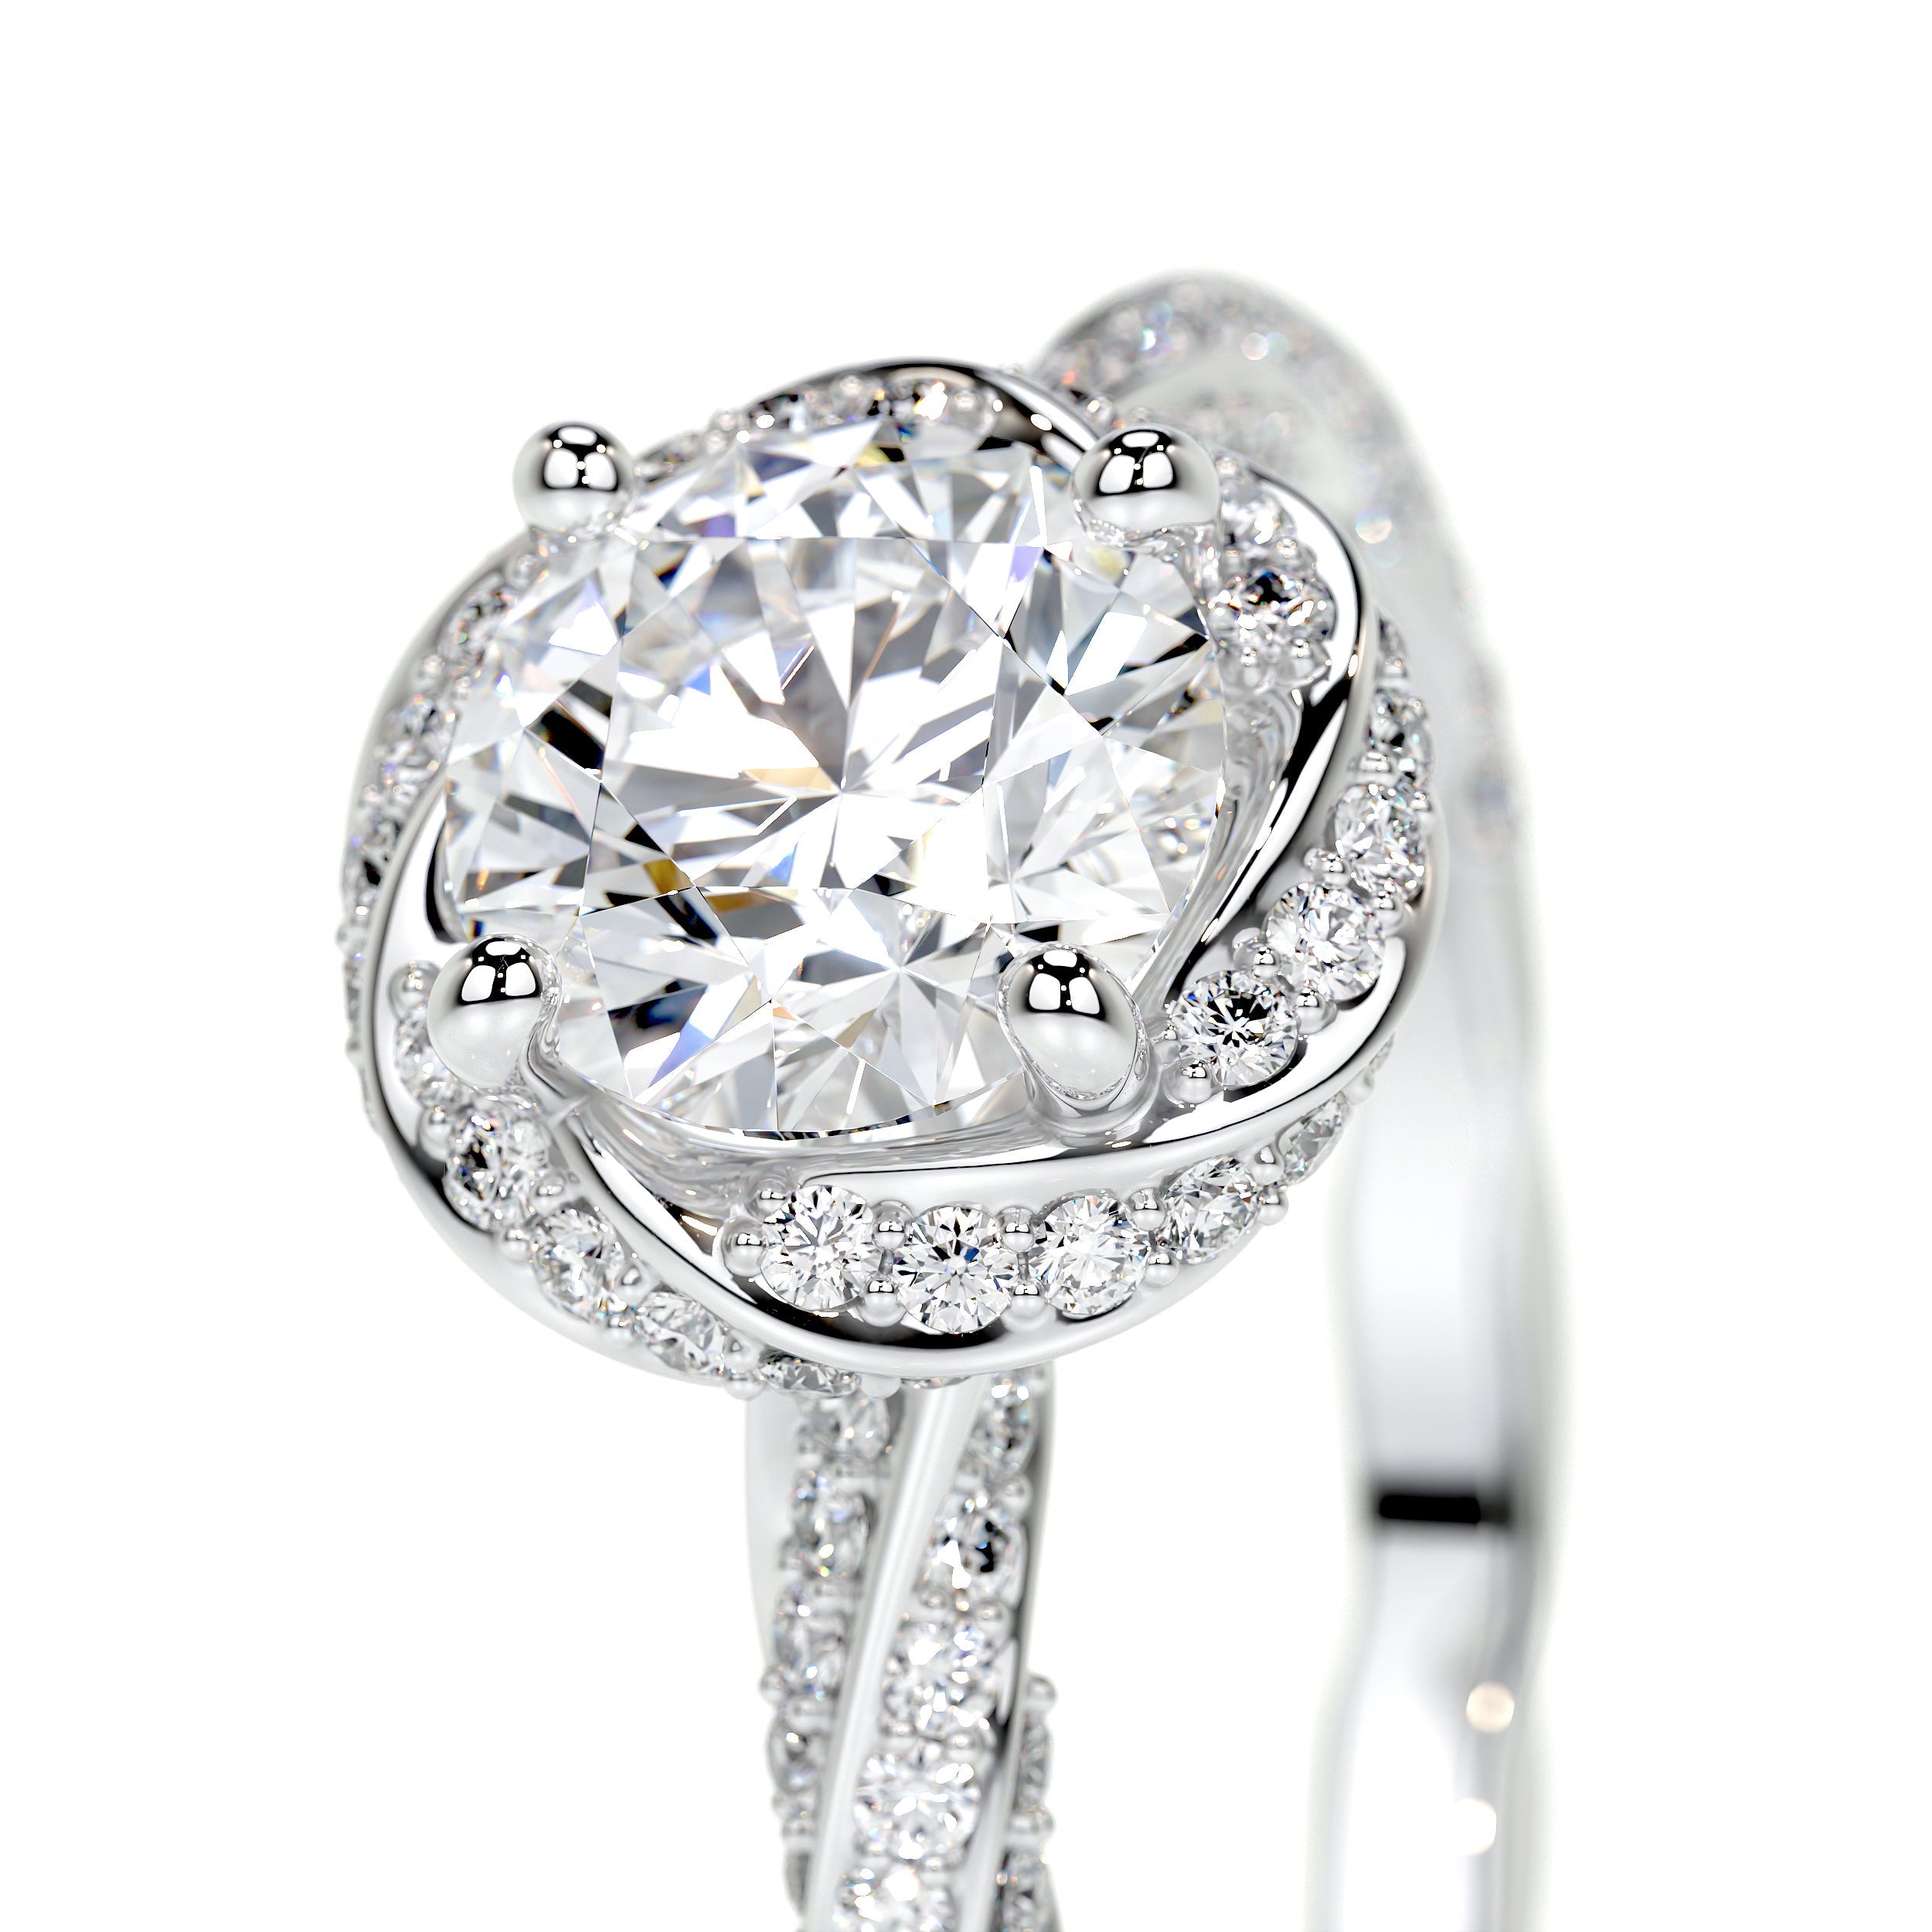 Joanne Lab Grown Diamond Ring   (1.50 Carat) -14K White Gold